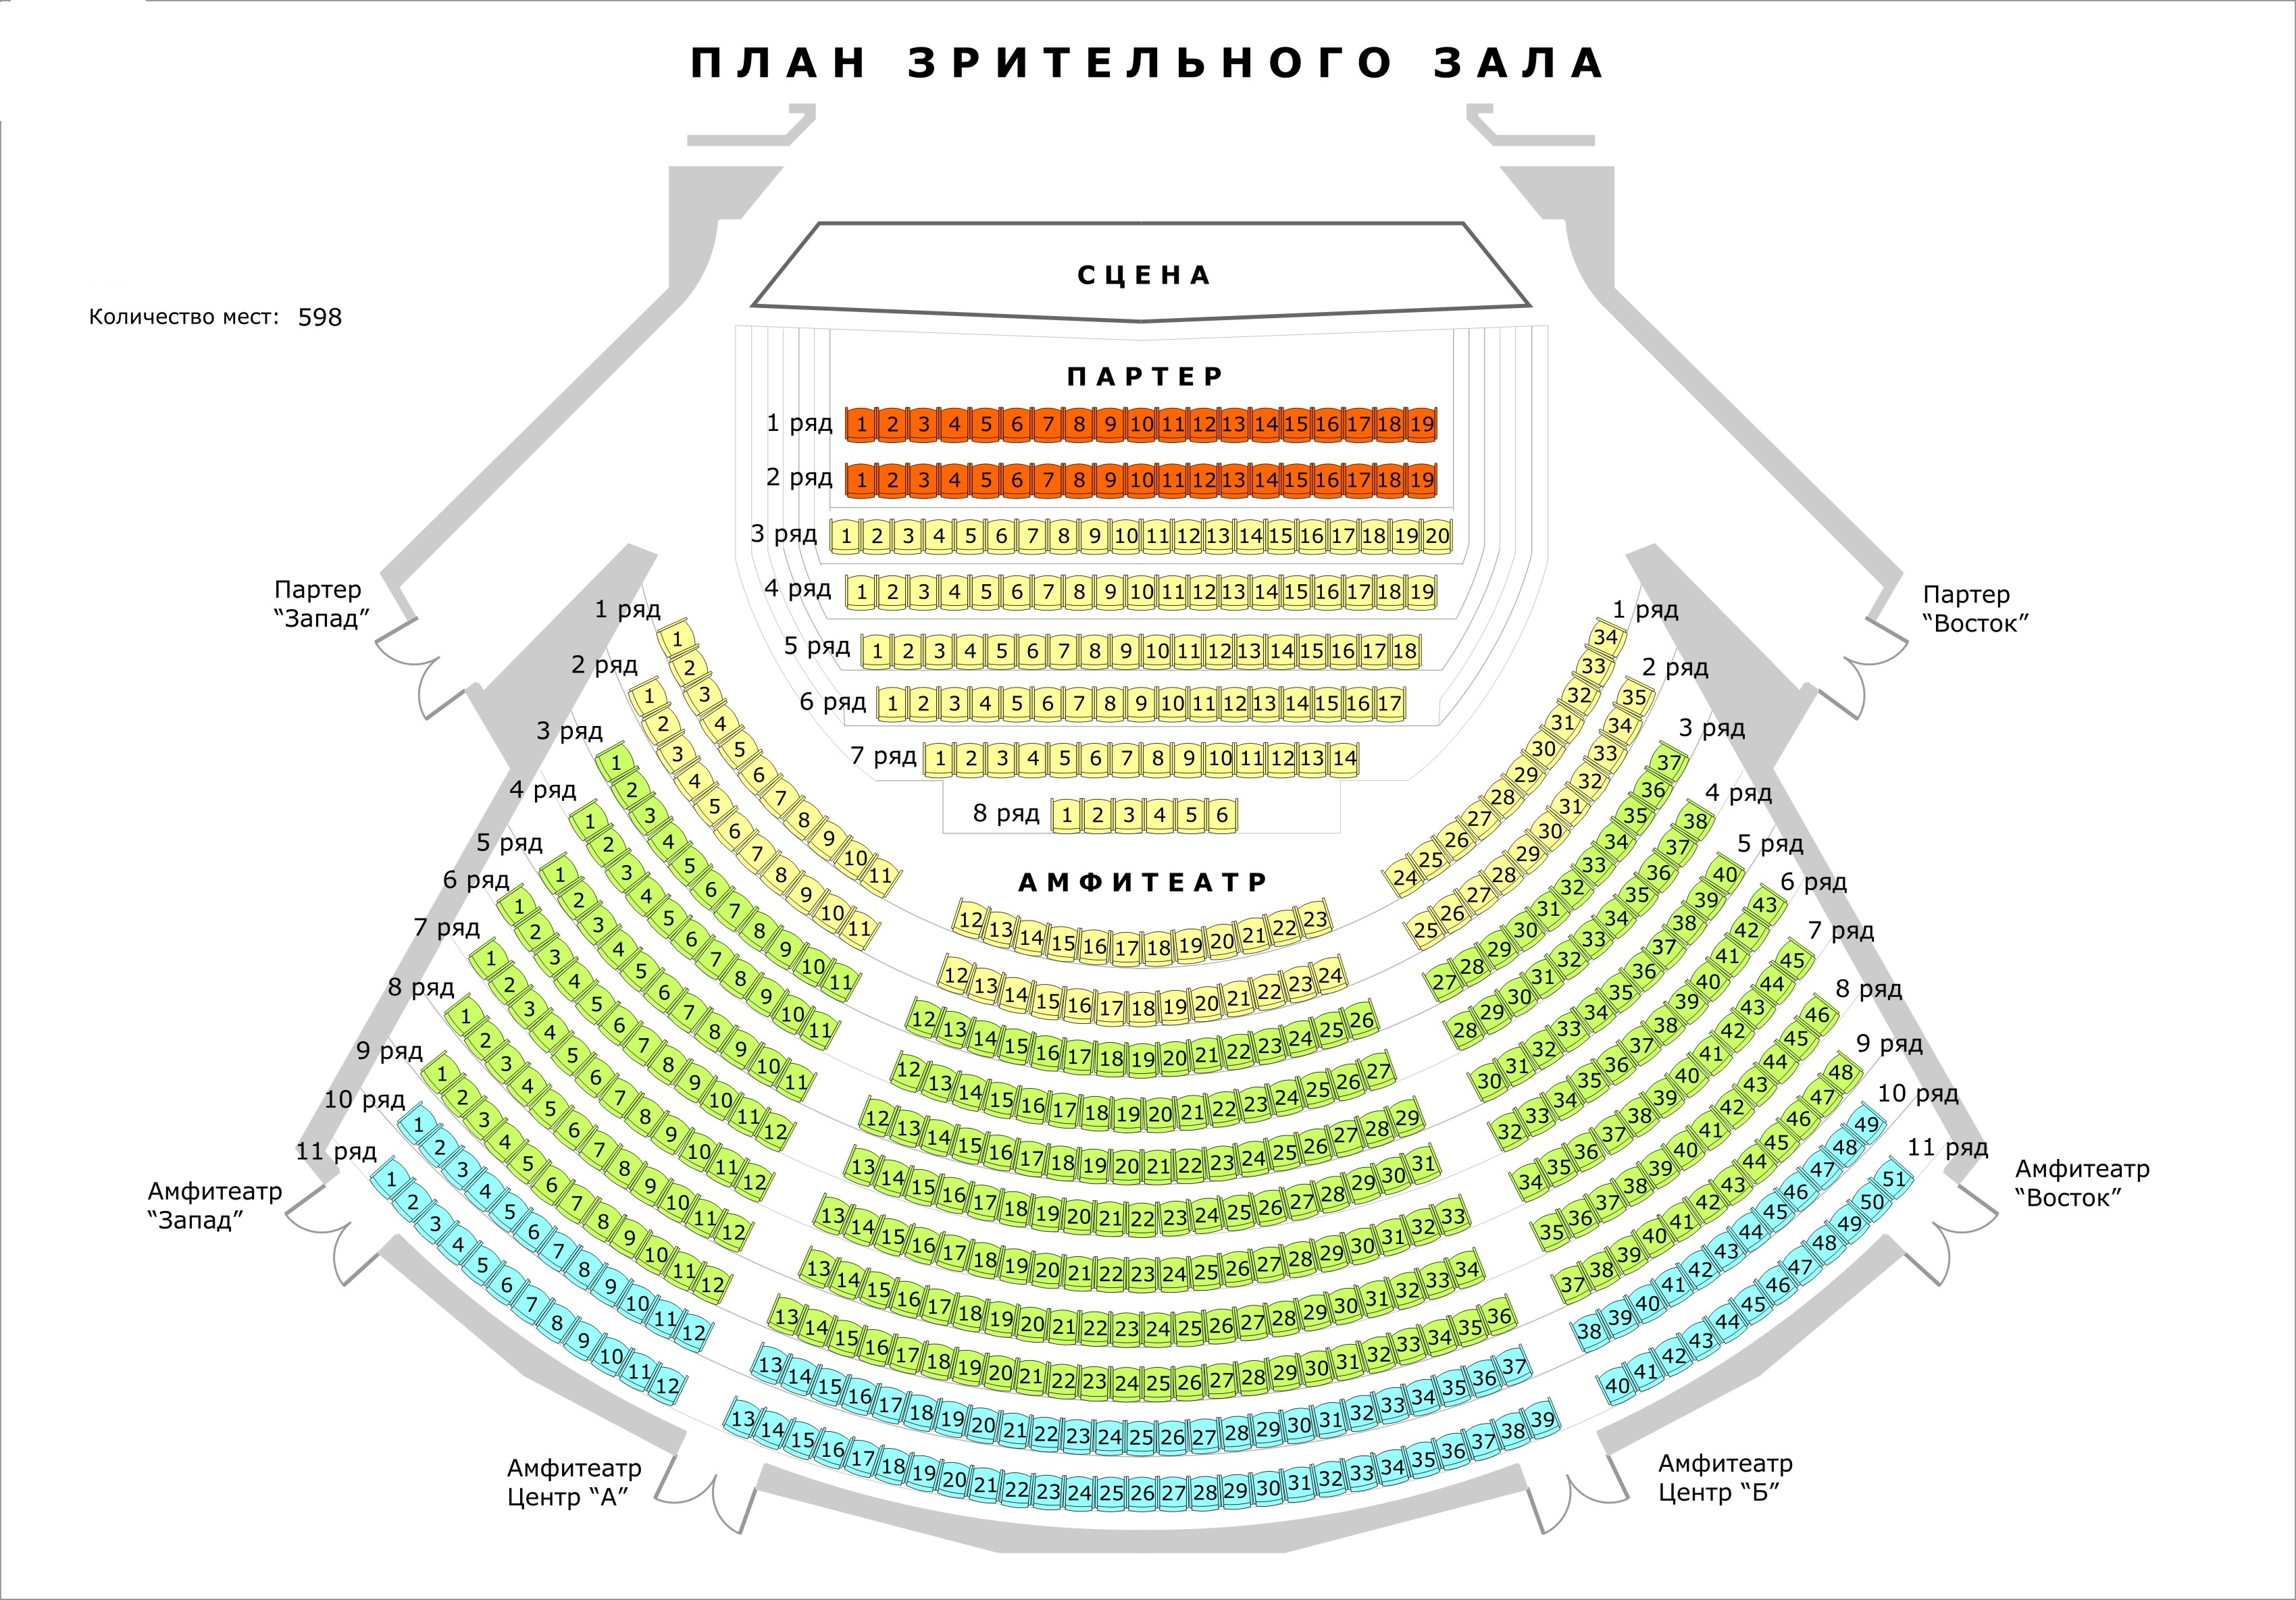 Местоположение театра. Театр ЛДМ новая сцена схема. Театр драмы Ставрополь расположение мест в зале. Расположение мест в театре партер амфитеатр. Театр МДМ расположение мест в зале.